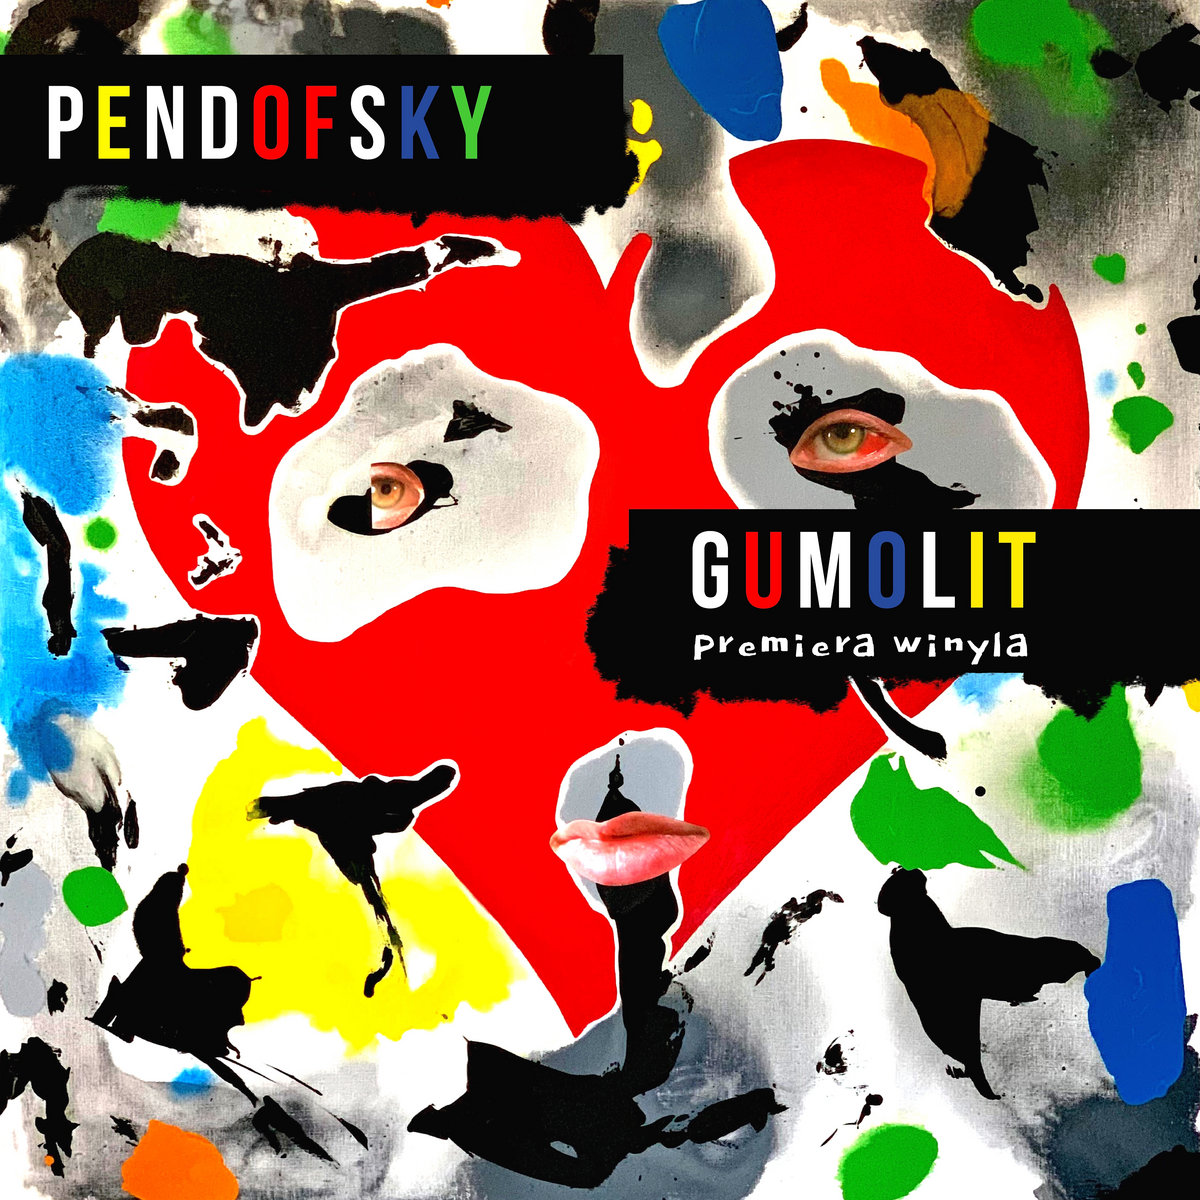 Pendofsky - [2021] Gumolit - premiera winyla live
(Judasz Records)